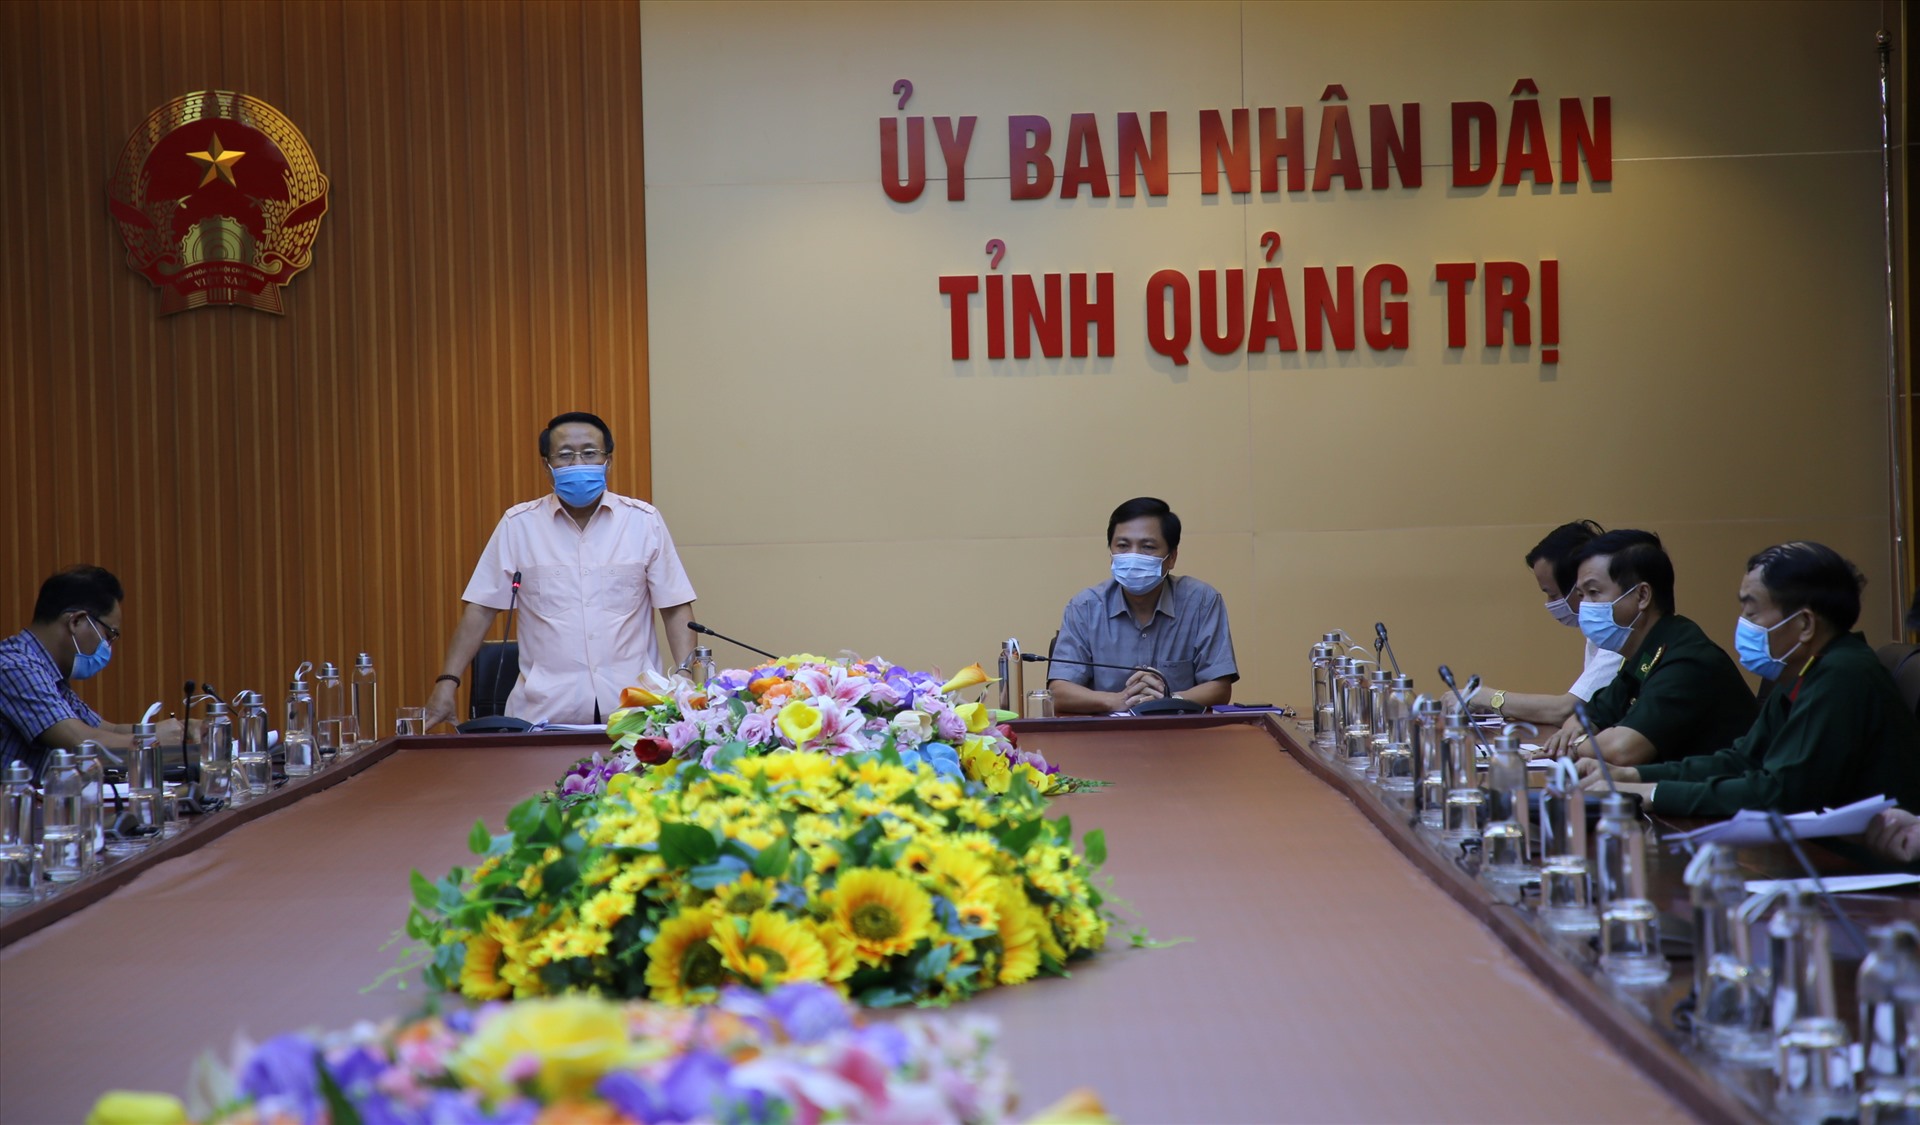 Ông Hà Sỹ Đồng - Phó Chủ tịch Thường trực UBND tỉnh Quảng Trị khẳng định tại cuộc họp Ban Chỉ đạo phòng chống dịch COVID-19 2 trường hợp trở về từ Lào cho kết quả âm tính. Ảnh: Hưng Thơ.